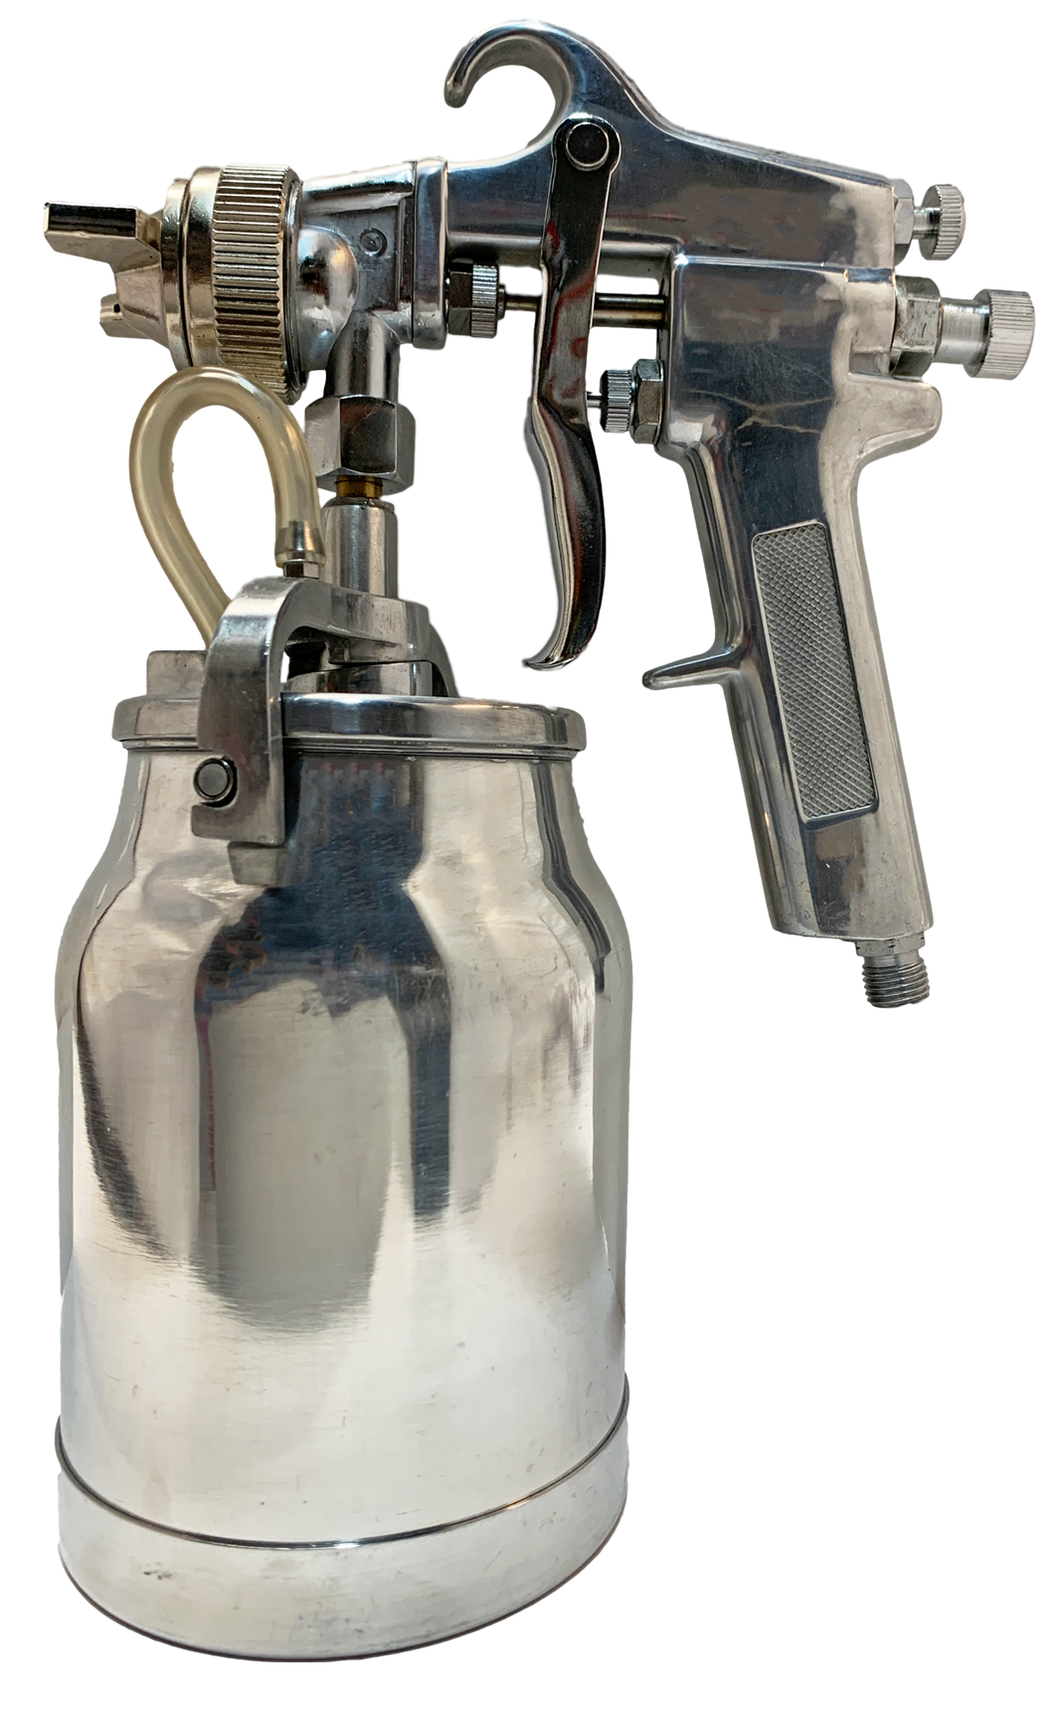 Demo Spray Gun